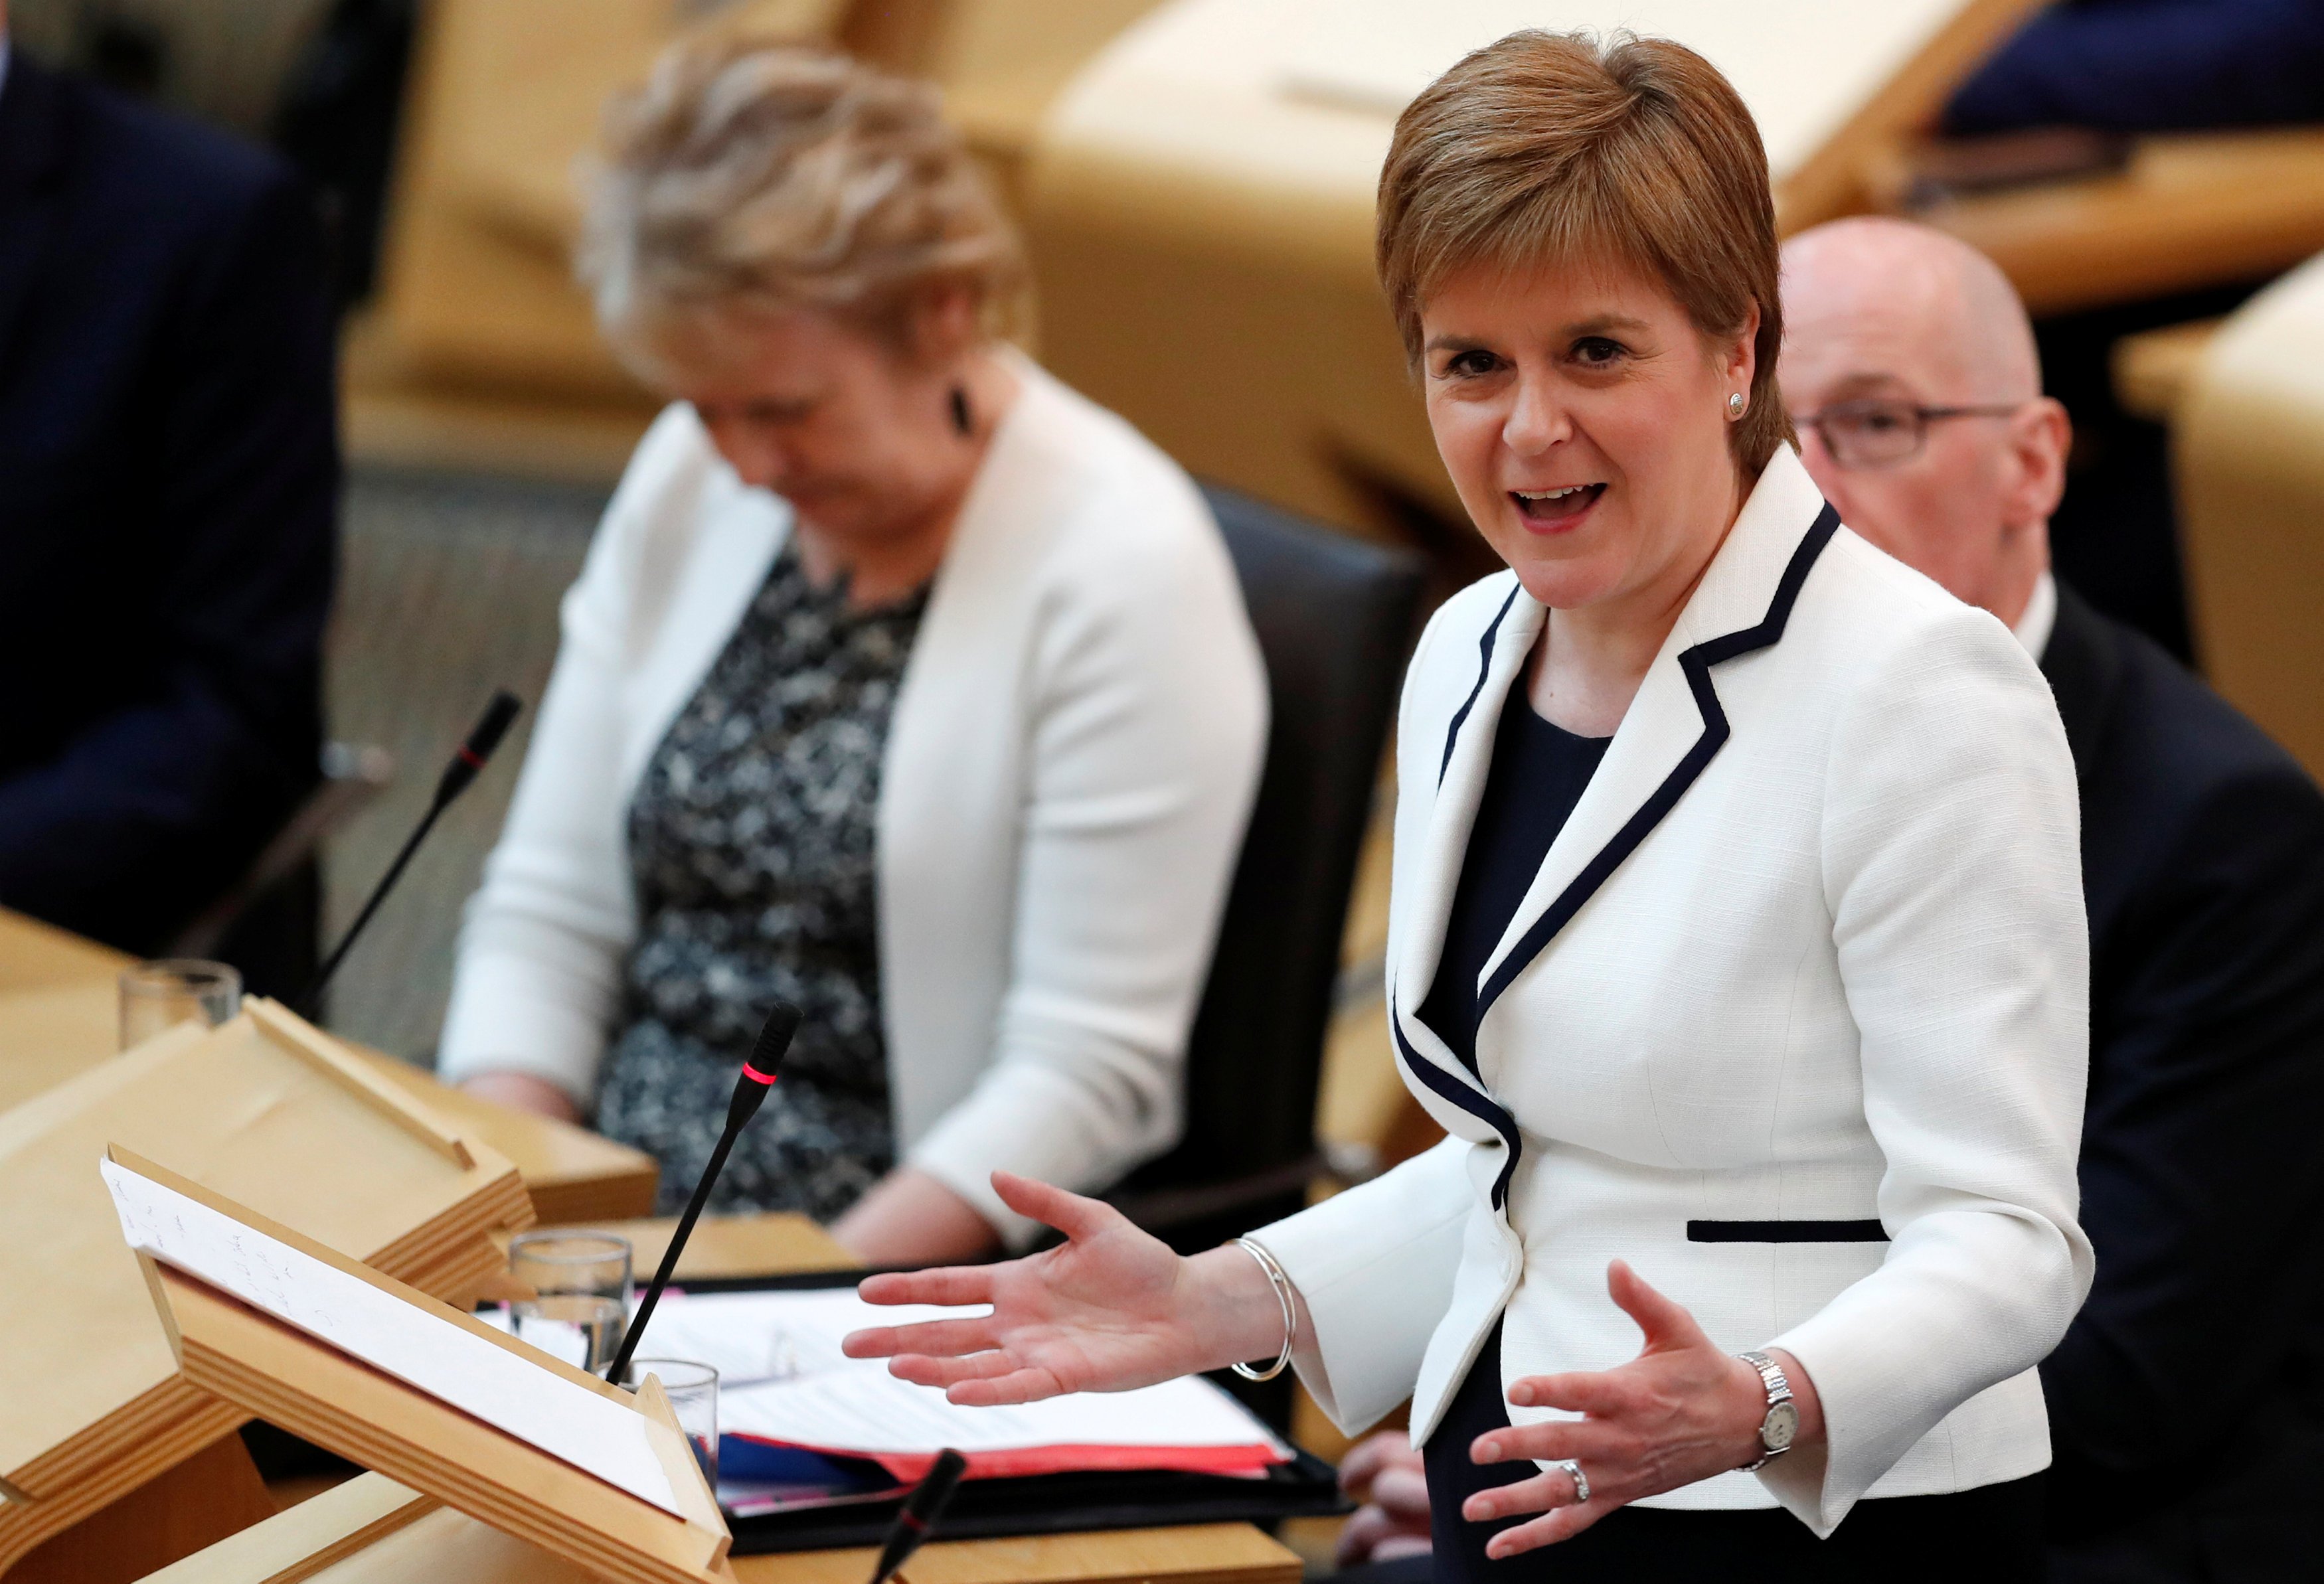 Sturgeon propondrá un segundo referéndum en Escocia antes de mayo